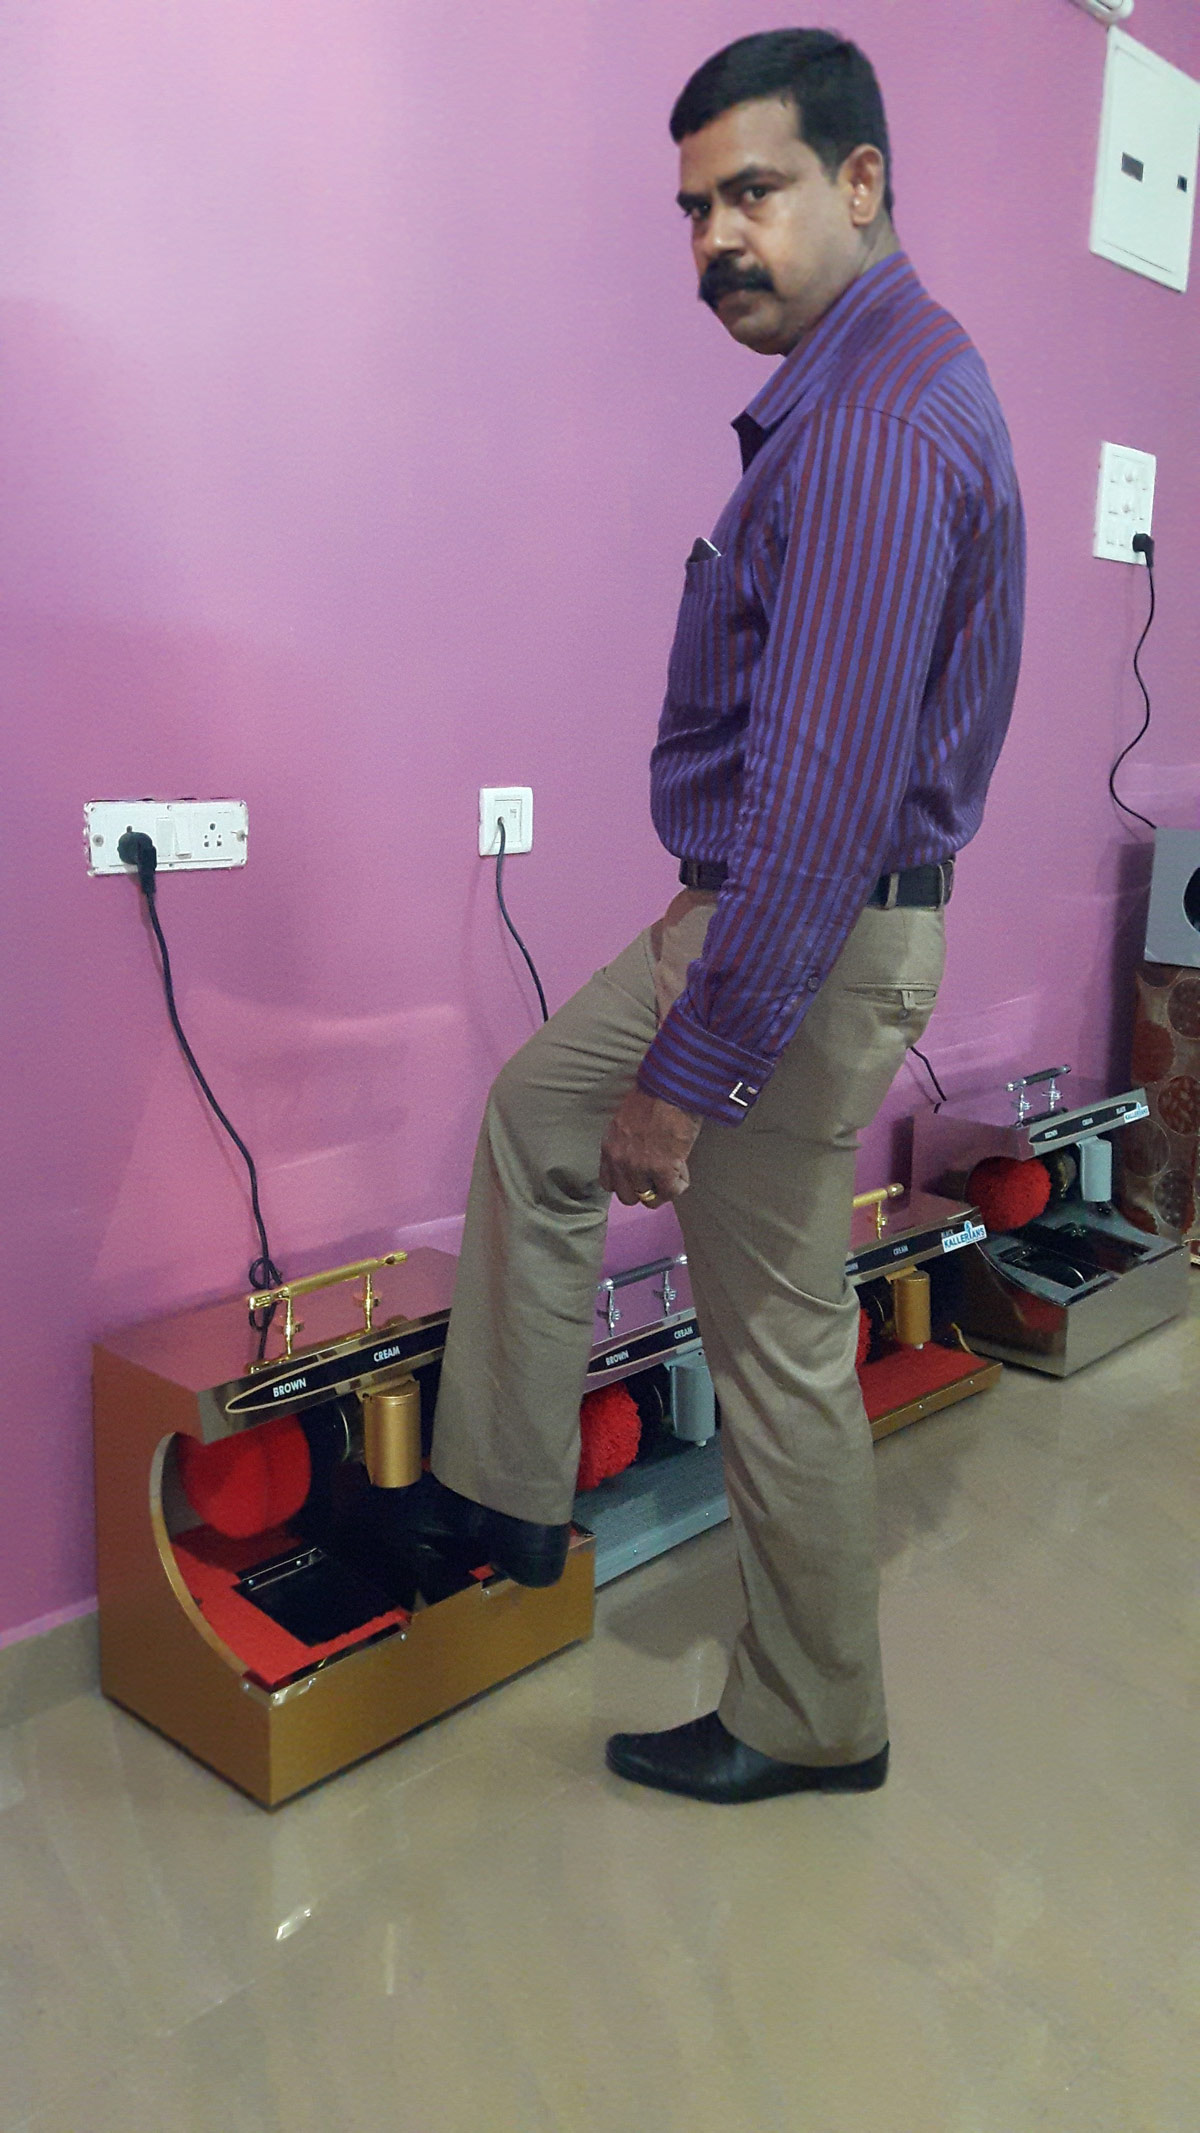 euronics shoe shining machine in Chennai, automatic shoe shiner in Chennai, shoe polish machine for home, shoe polish machine price in Chennai, shoe polish machine with automatic sensor in Chennai supplier